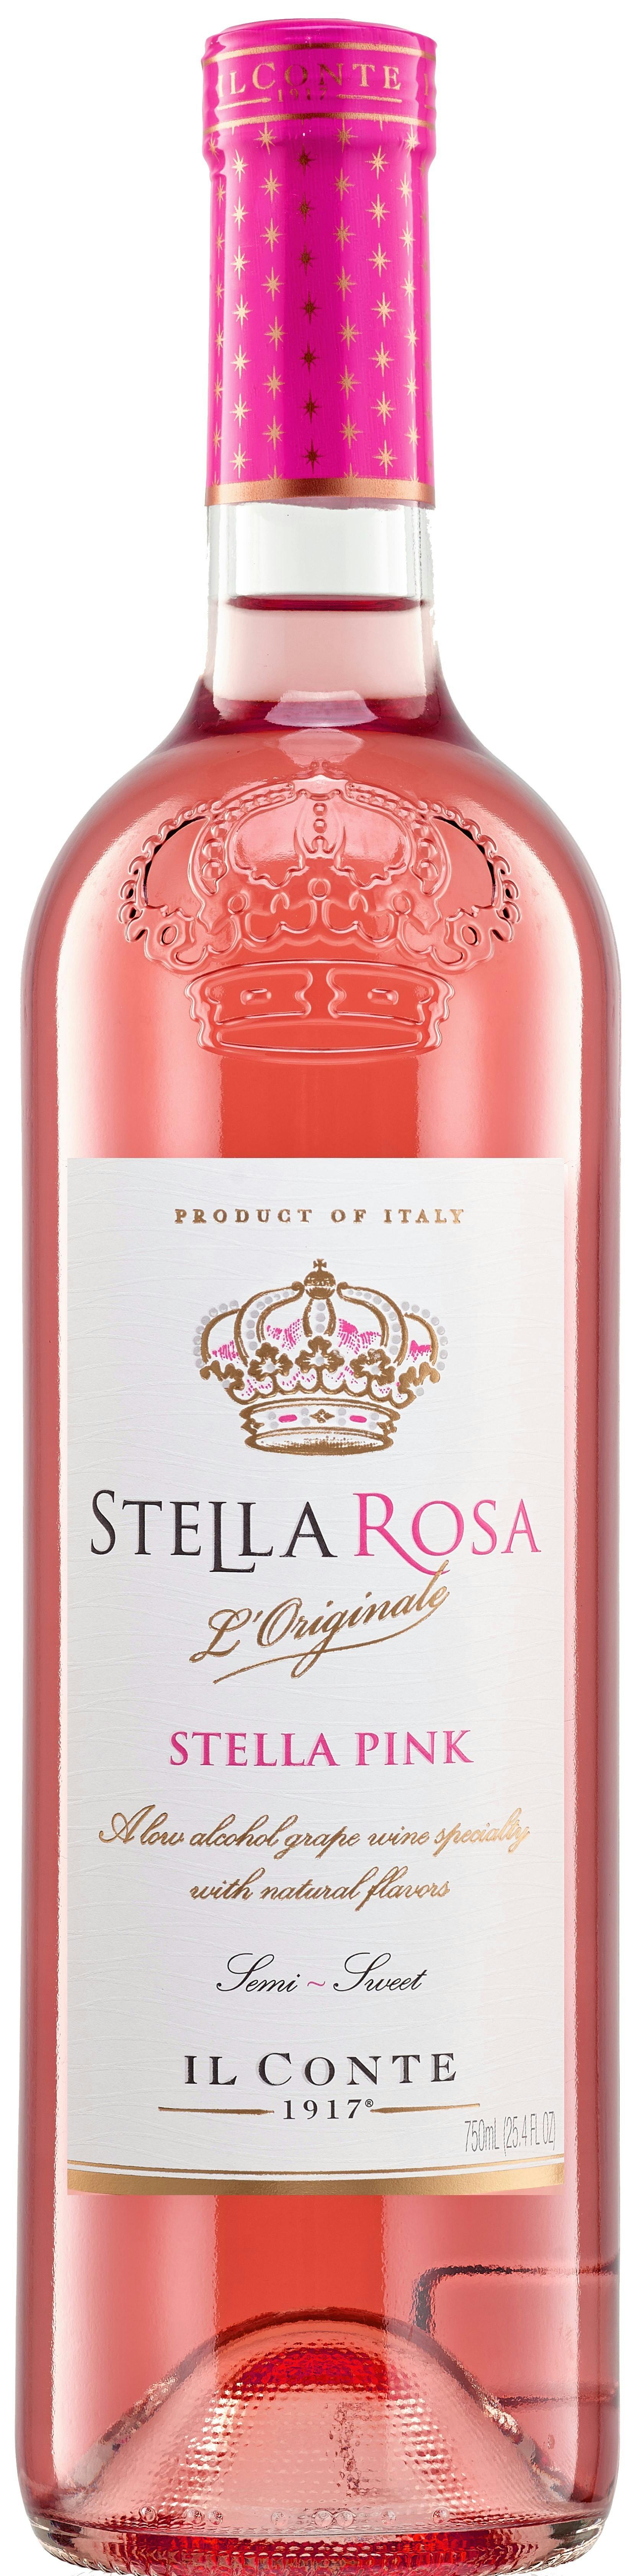 stella rosa moscato wine